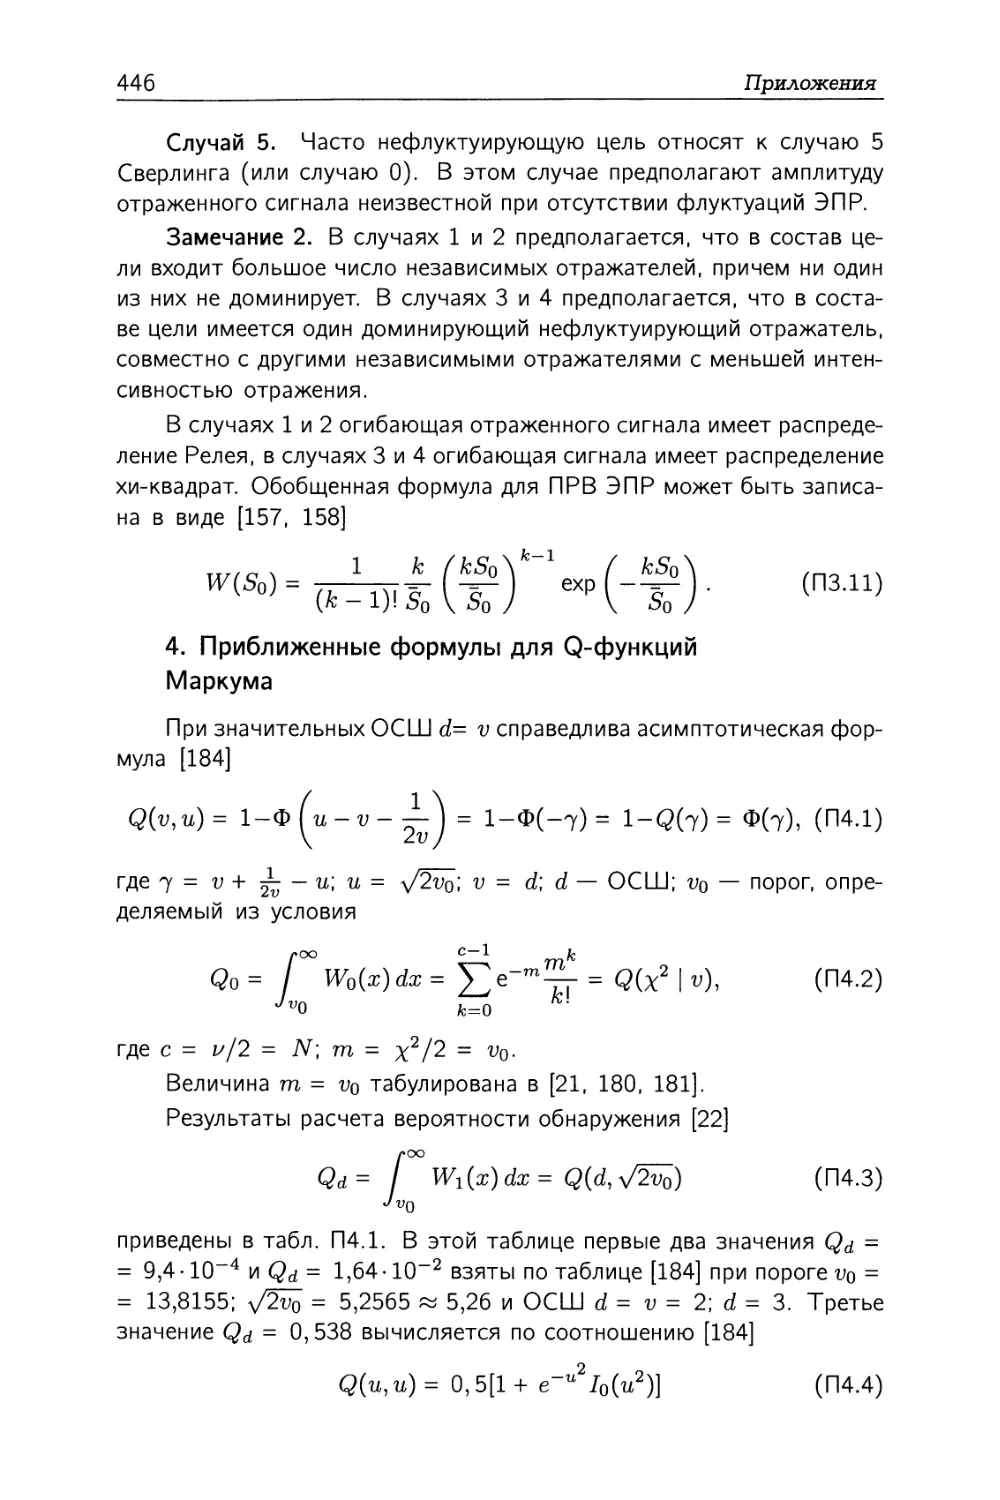 4. Приближенные формулы для Q-функций Маркума